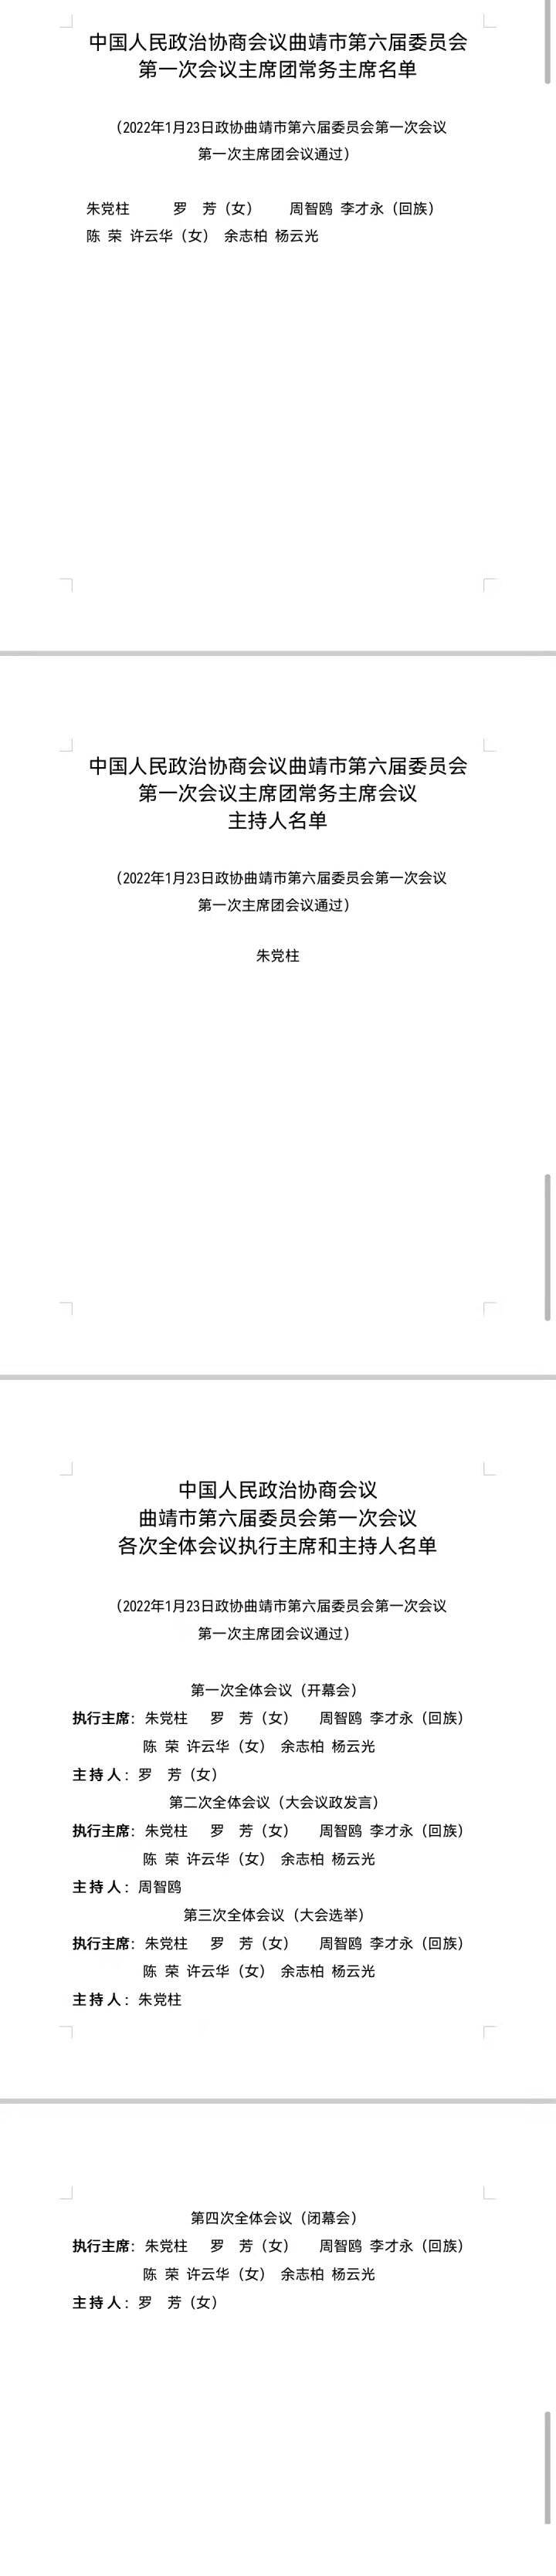 中国人民政治协商会议曲靖市第六届委员会第一次会议主席团常务主席、主席团常务主席会议主持人、各次全会执行主席和主持人名单